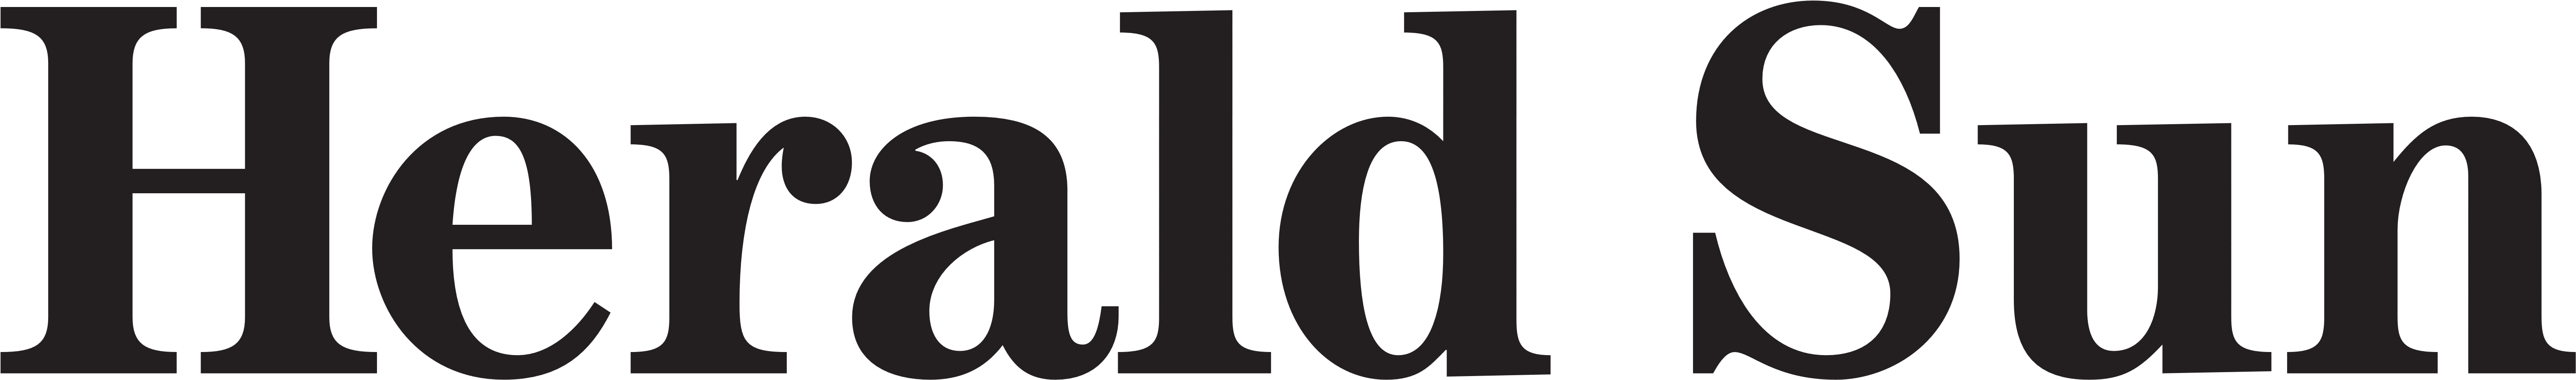 Herald Sun Logo, Text - Islington Borough Council Logo (6000x1000)